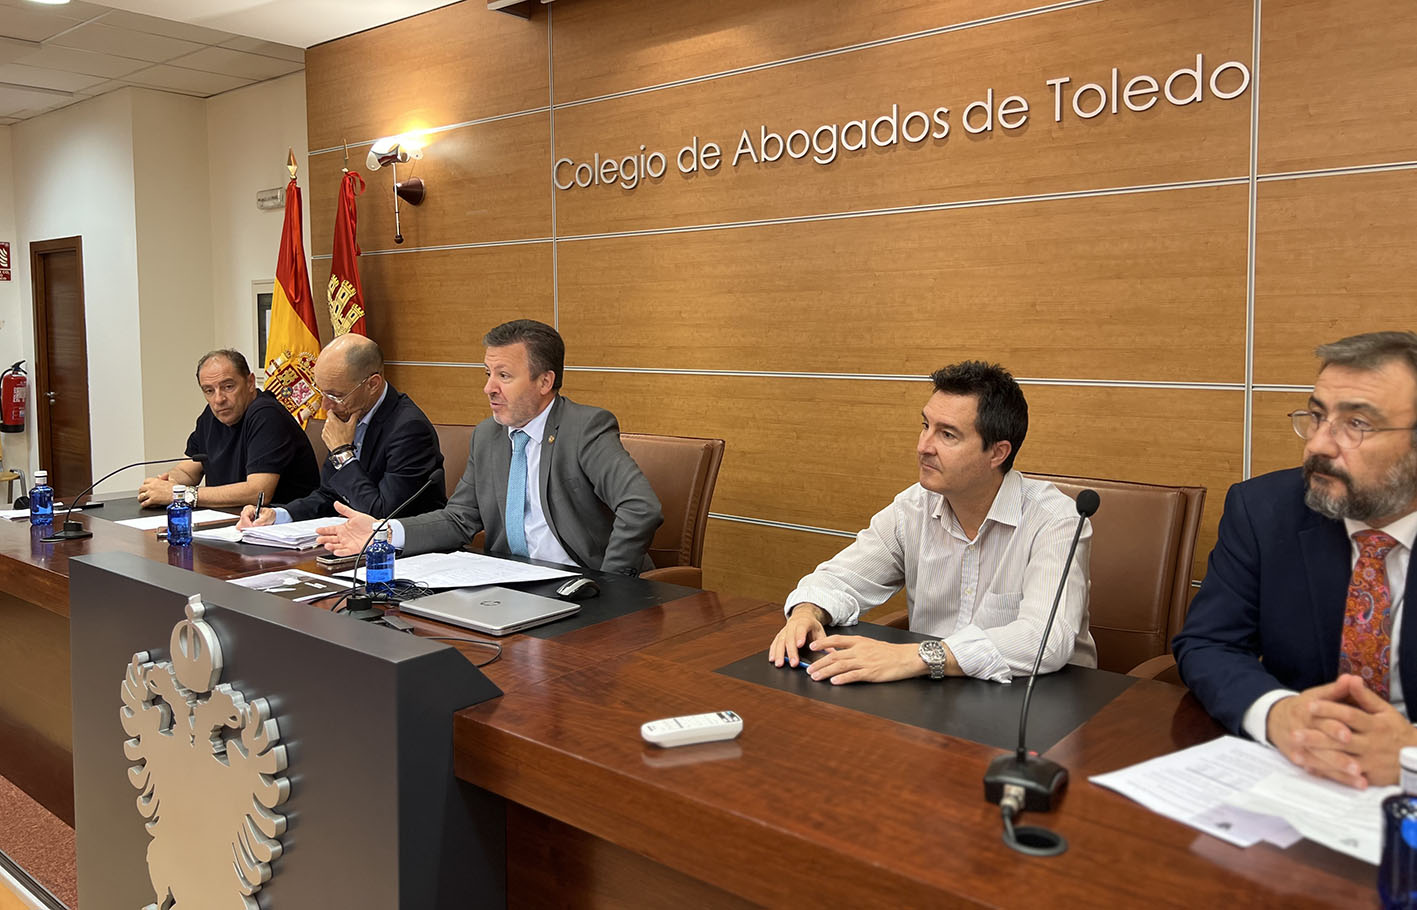 Reunión de la Junta Directiva del Colegio de Abogados de Toledo.